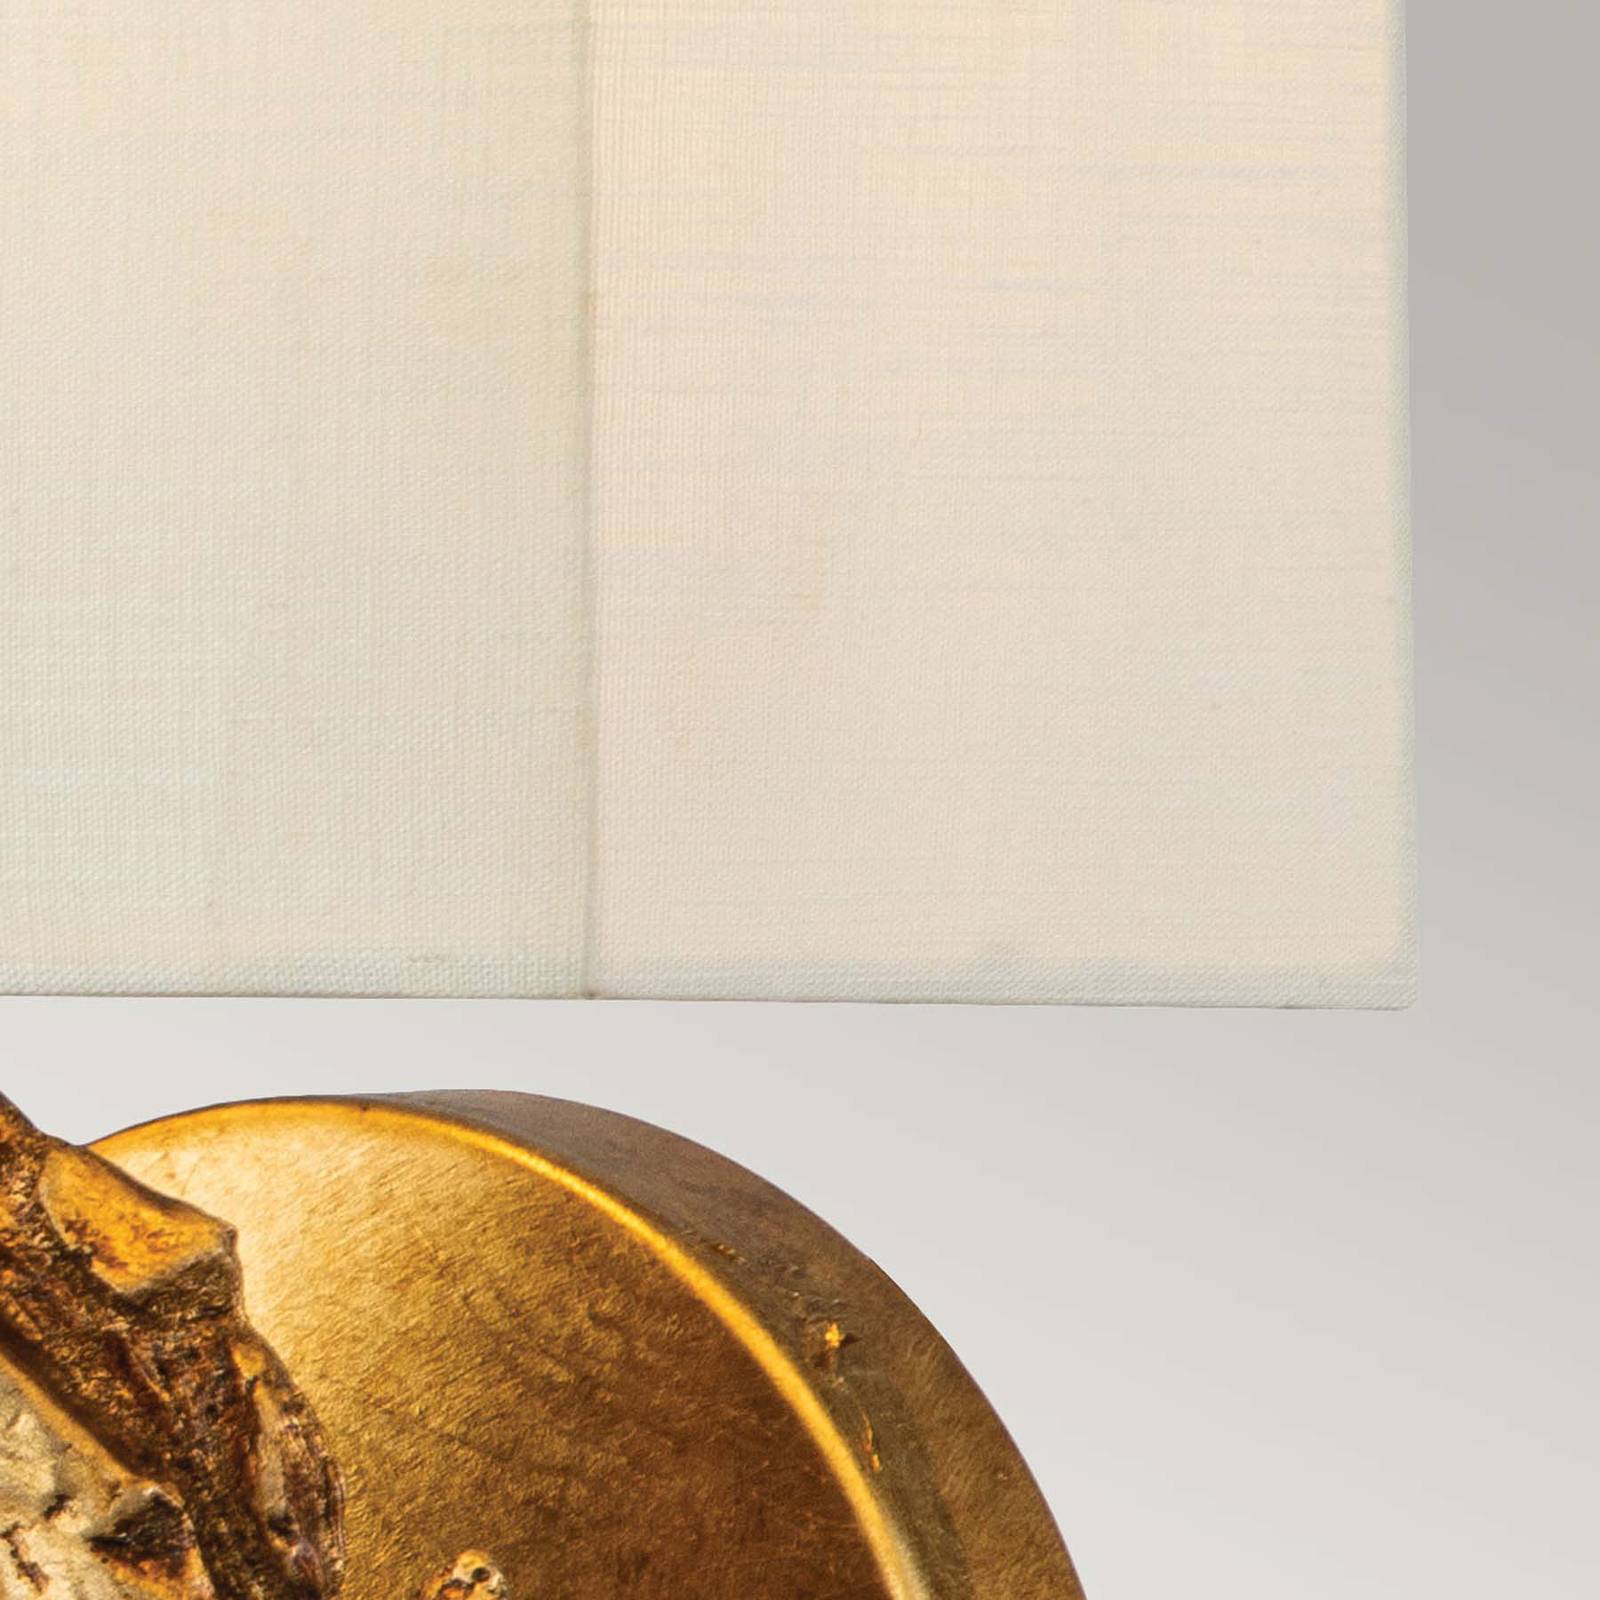 Elstead swirl nagyméretű fali lámpa, vászon ernyővel, aranyszínű fóliás kivitelben